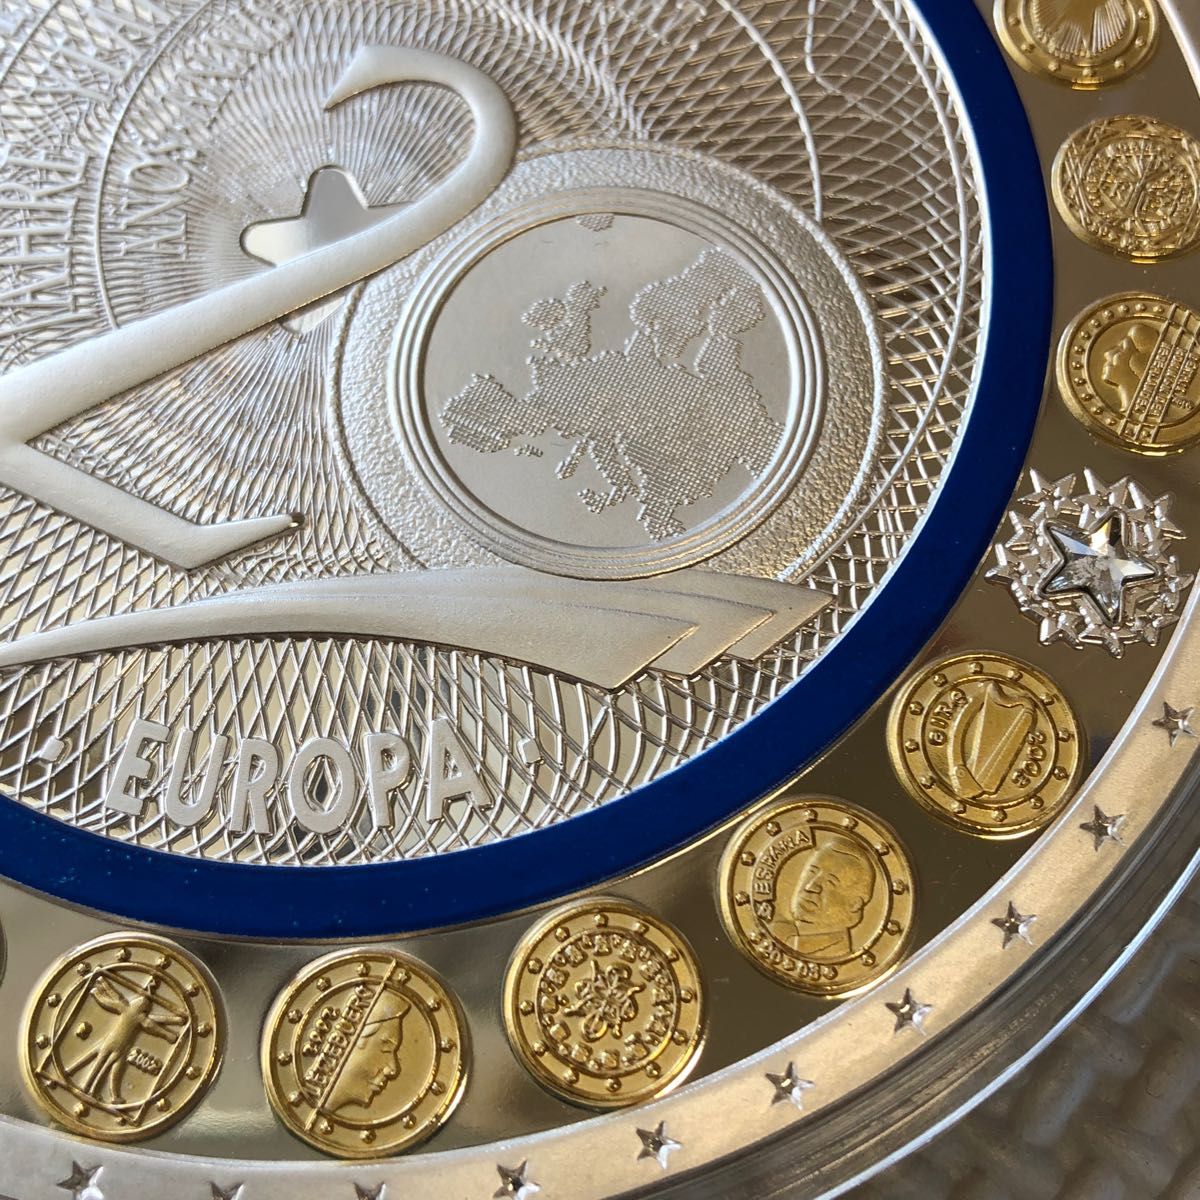 ユーロ誕生20周年 超大型コイン】376g スワロフスキー 装飾付 ドイツ